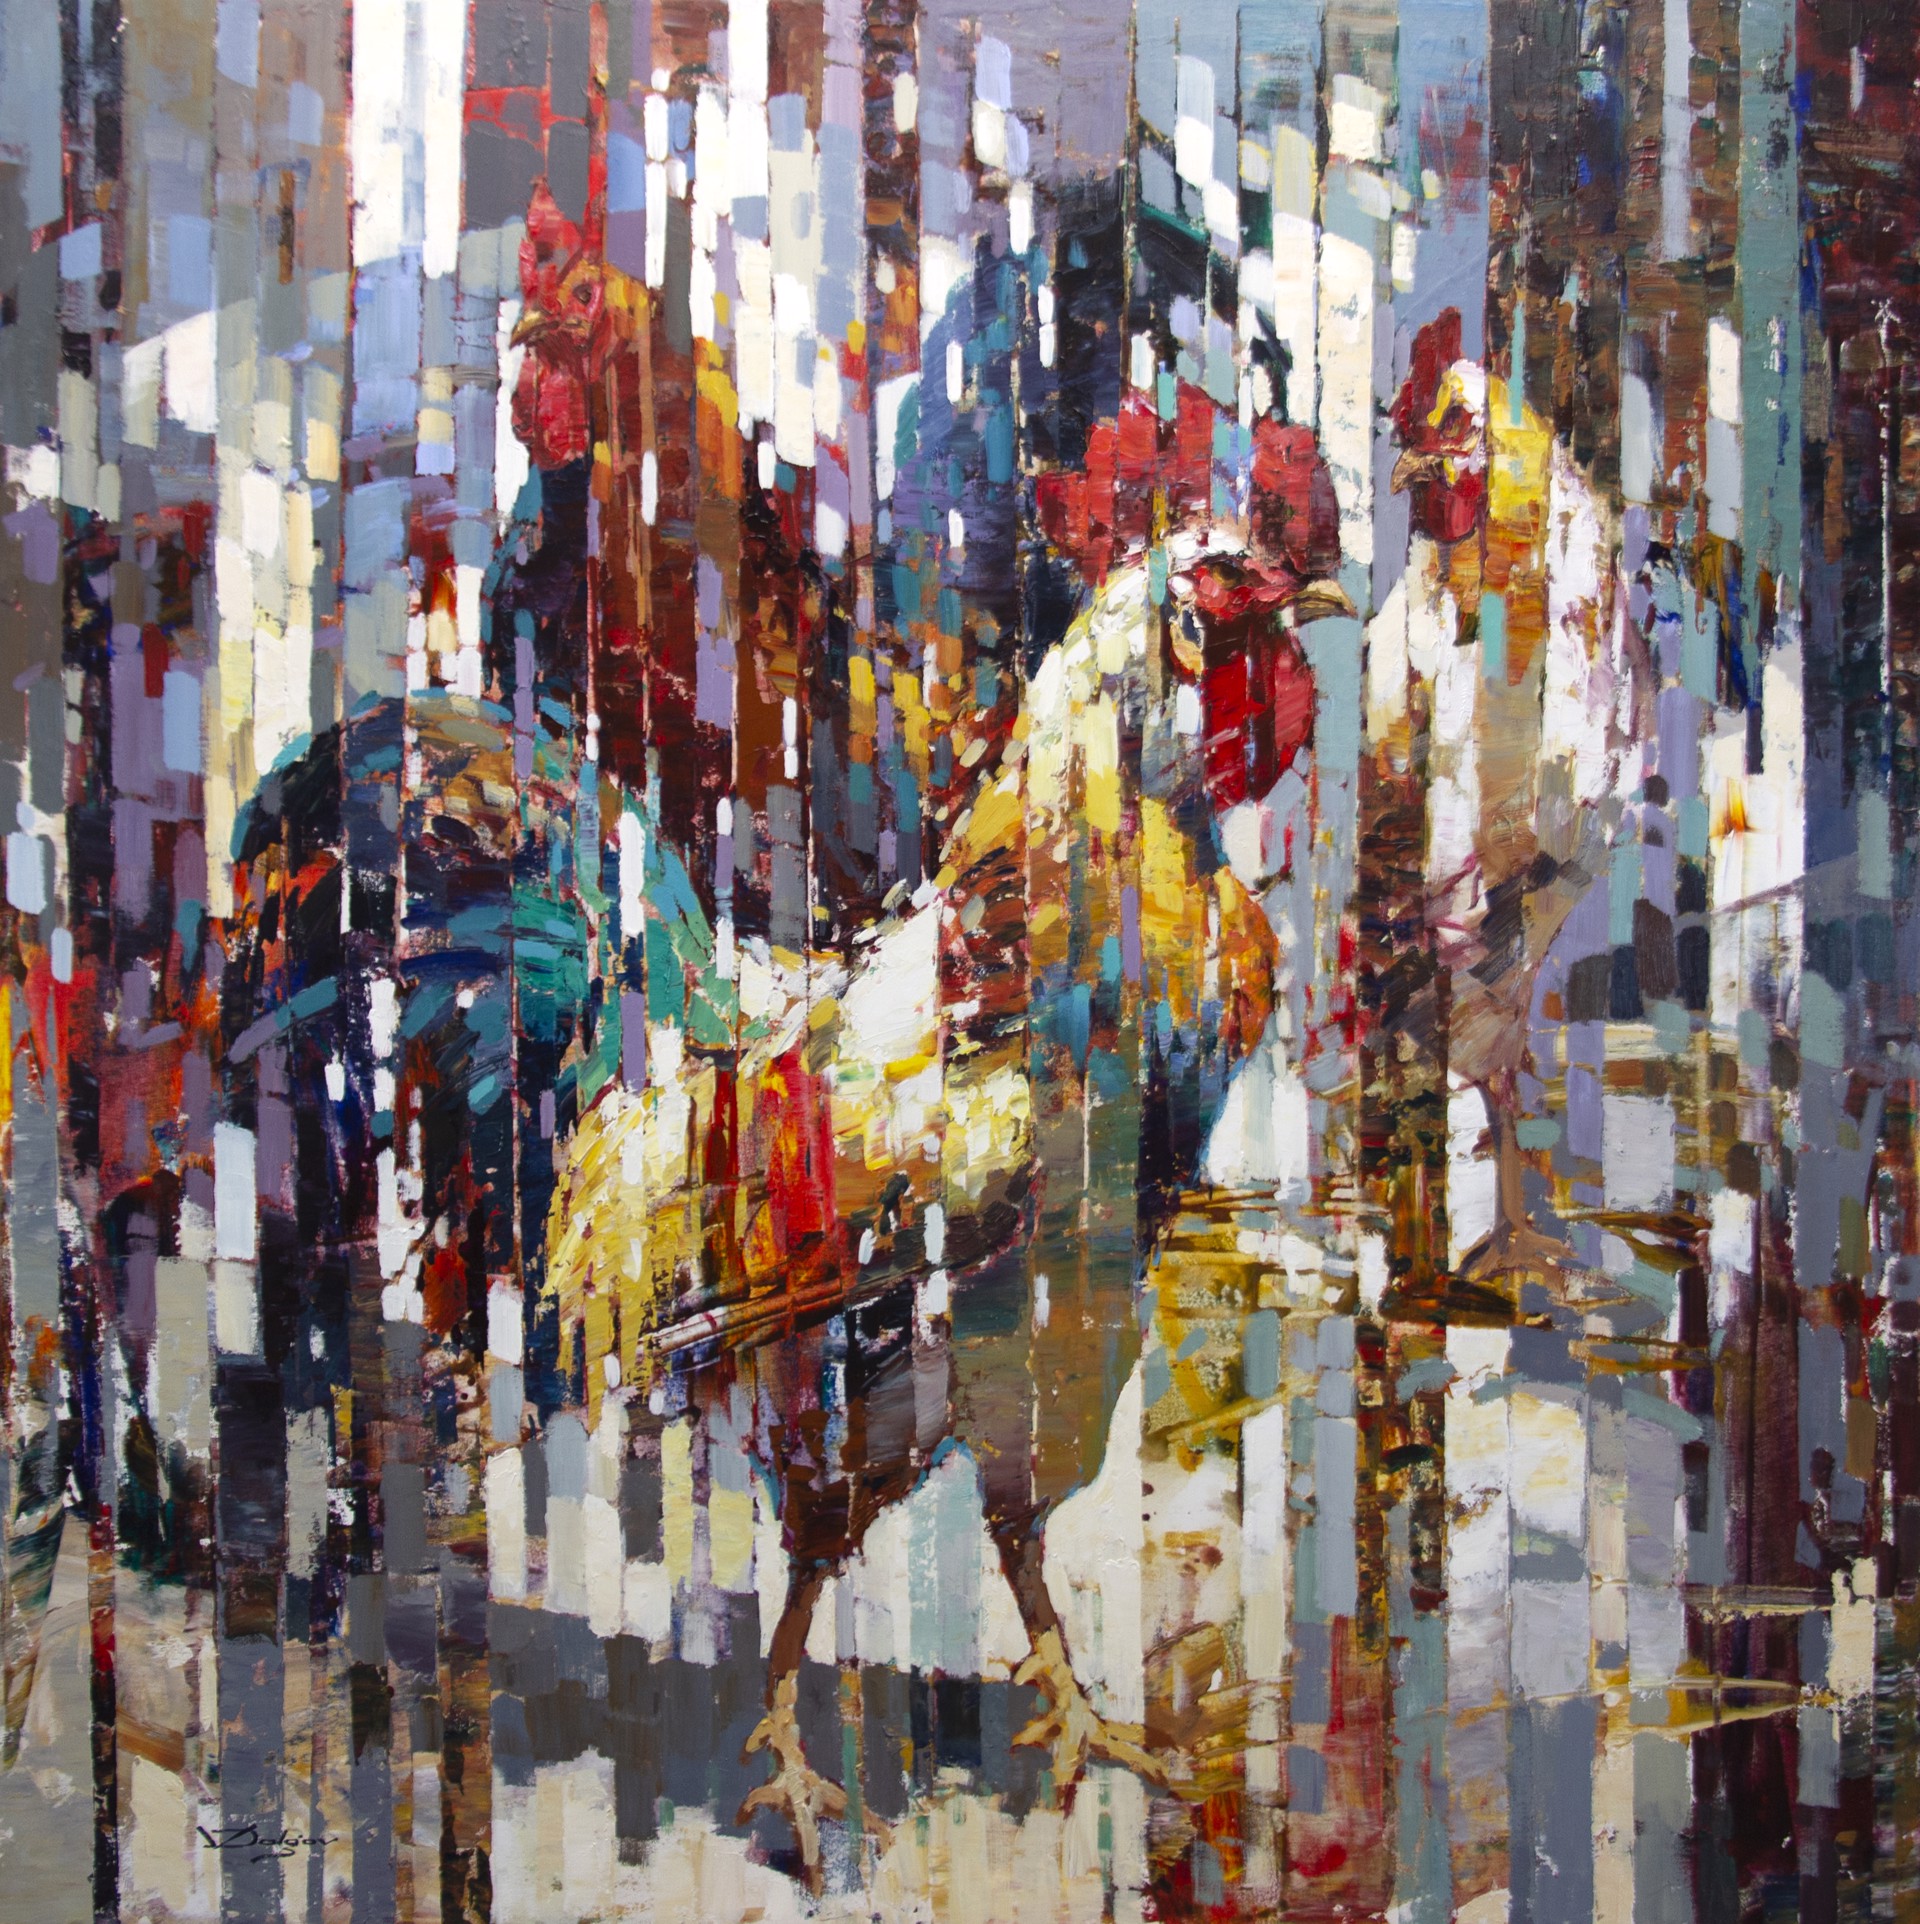 Roosters by Vadim Dolgov